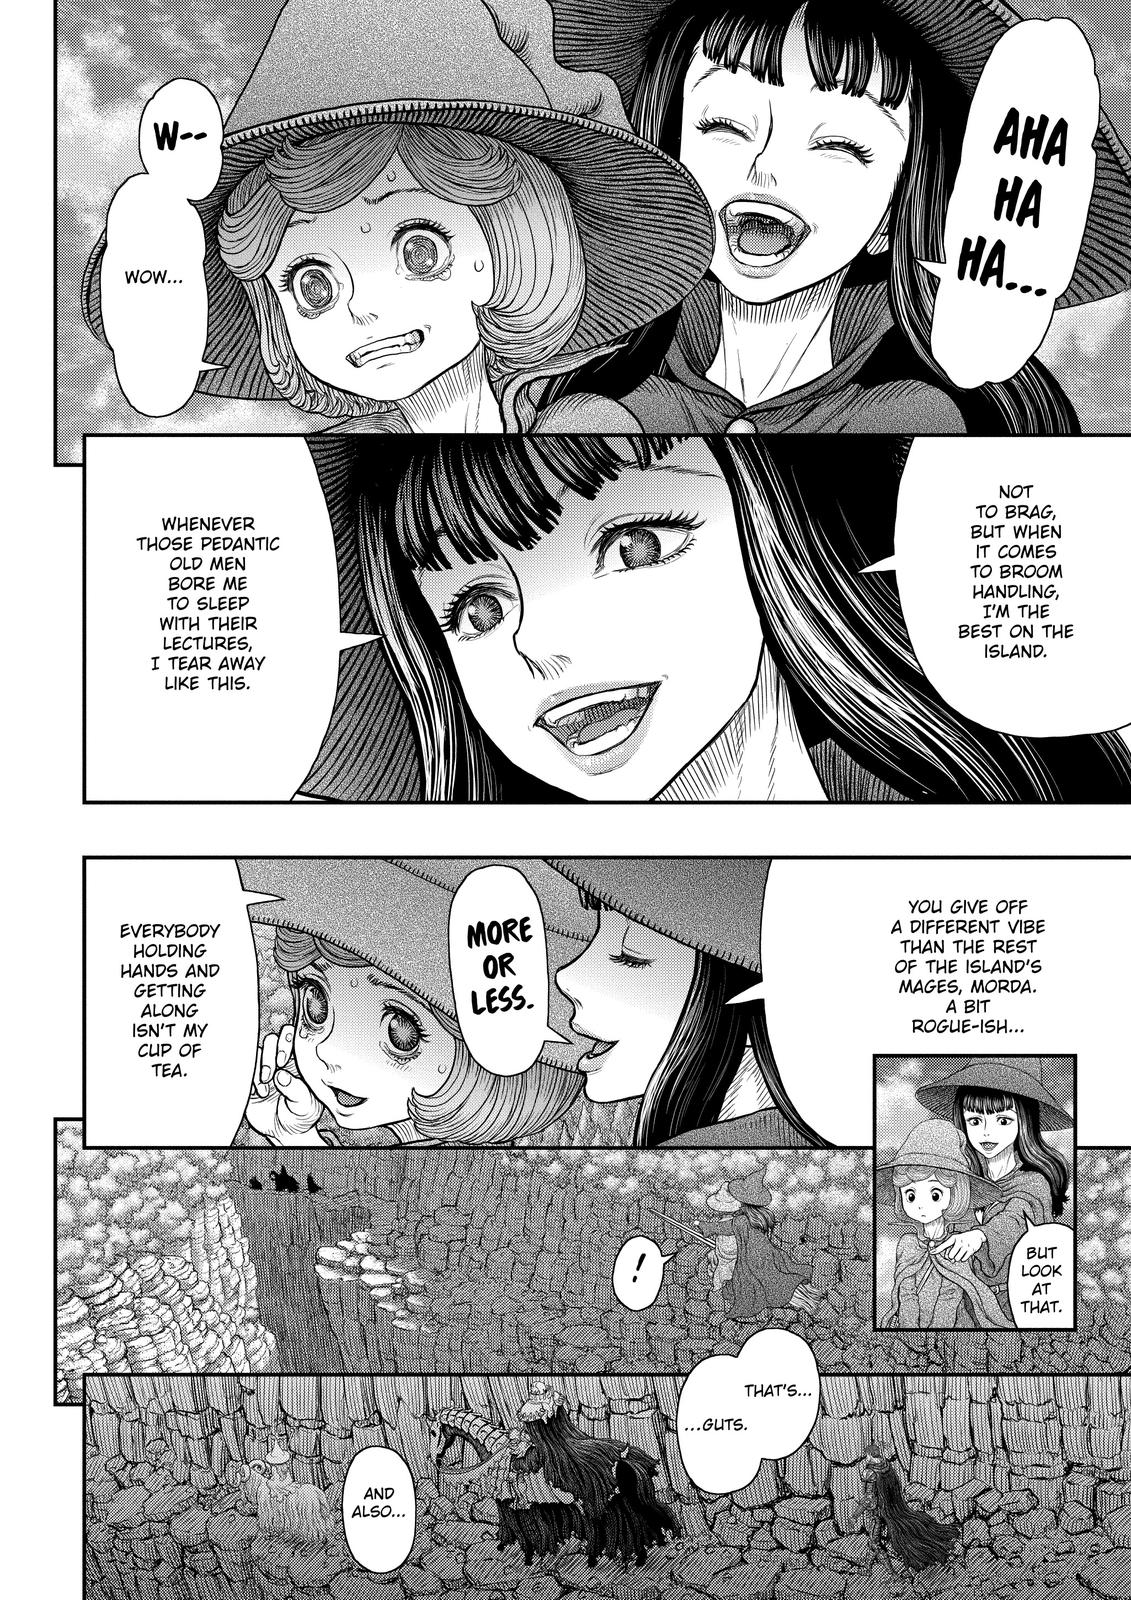 Berserk Manga Chapter 361 image 09